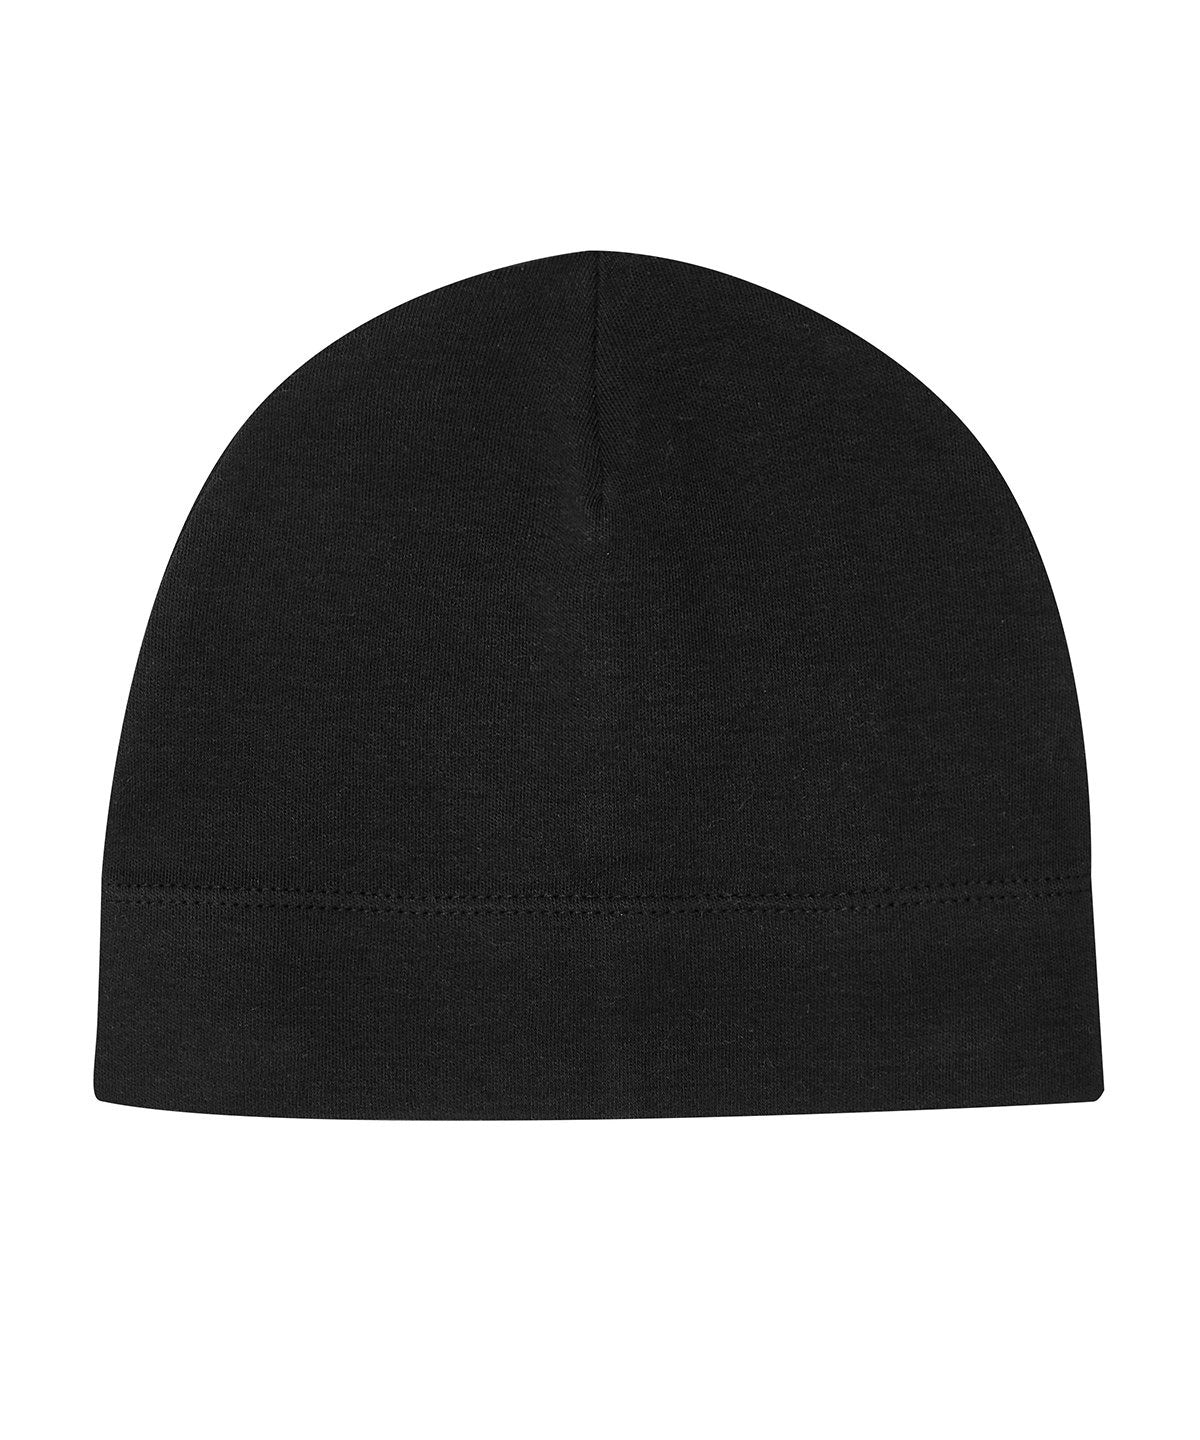 Personalised Hats - Black Babybugz Baby hat